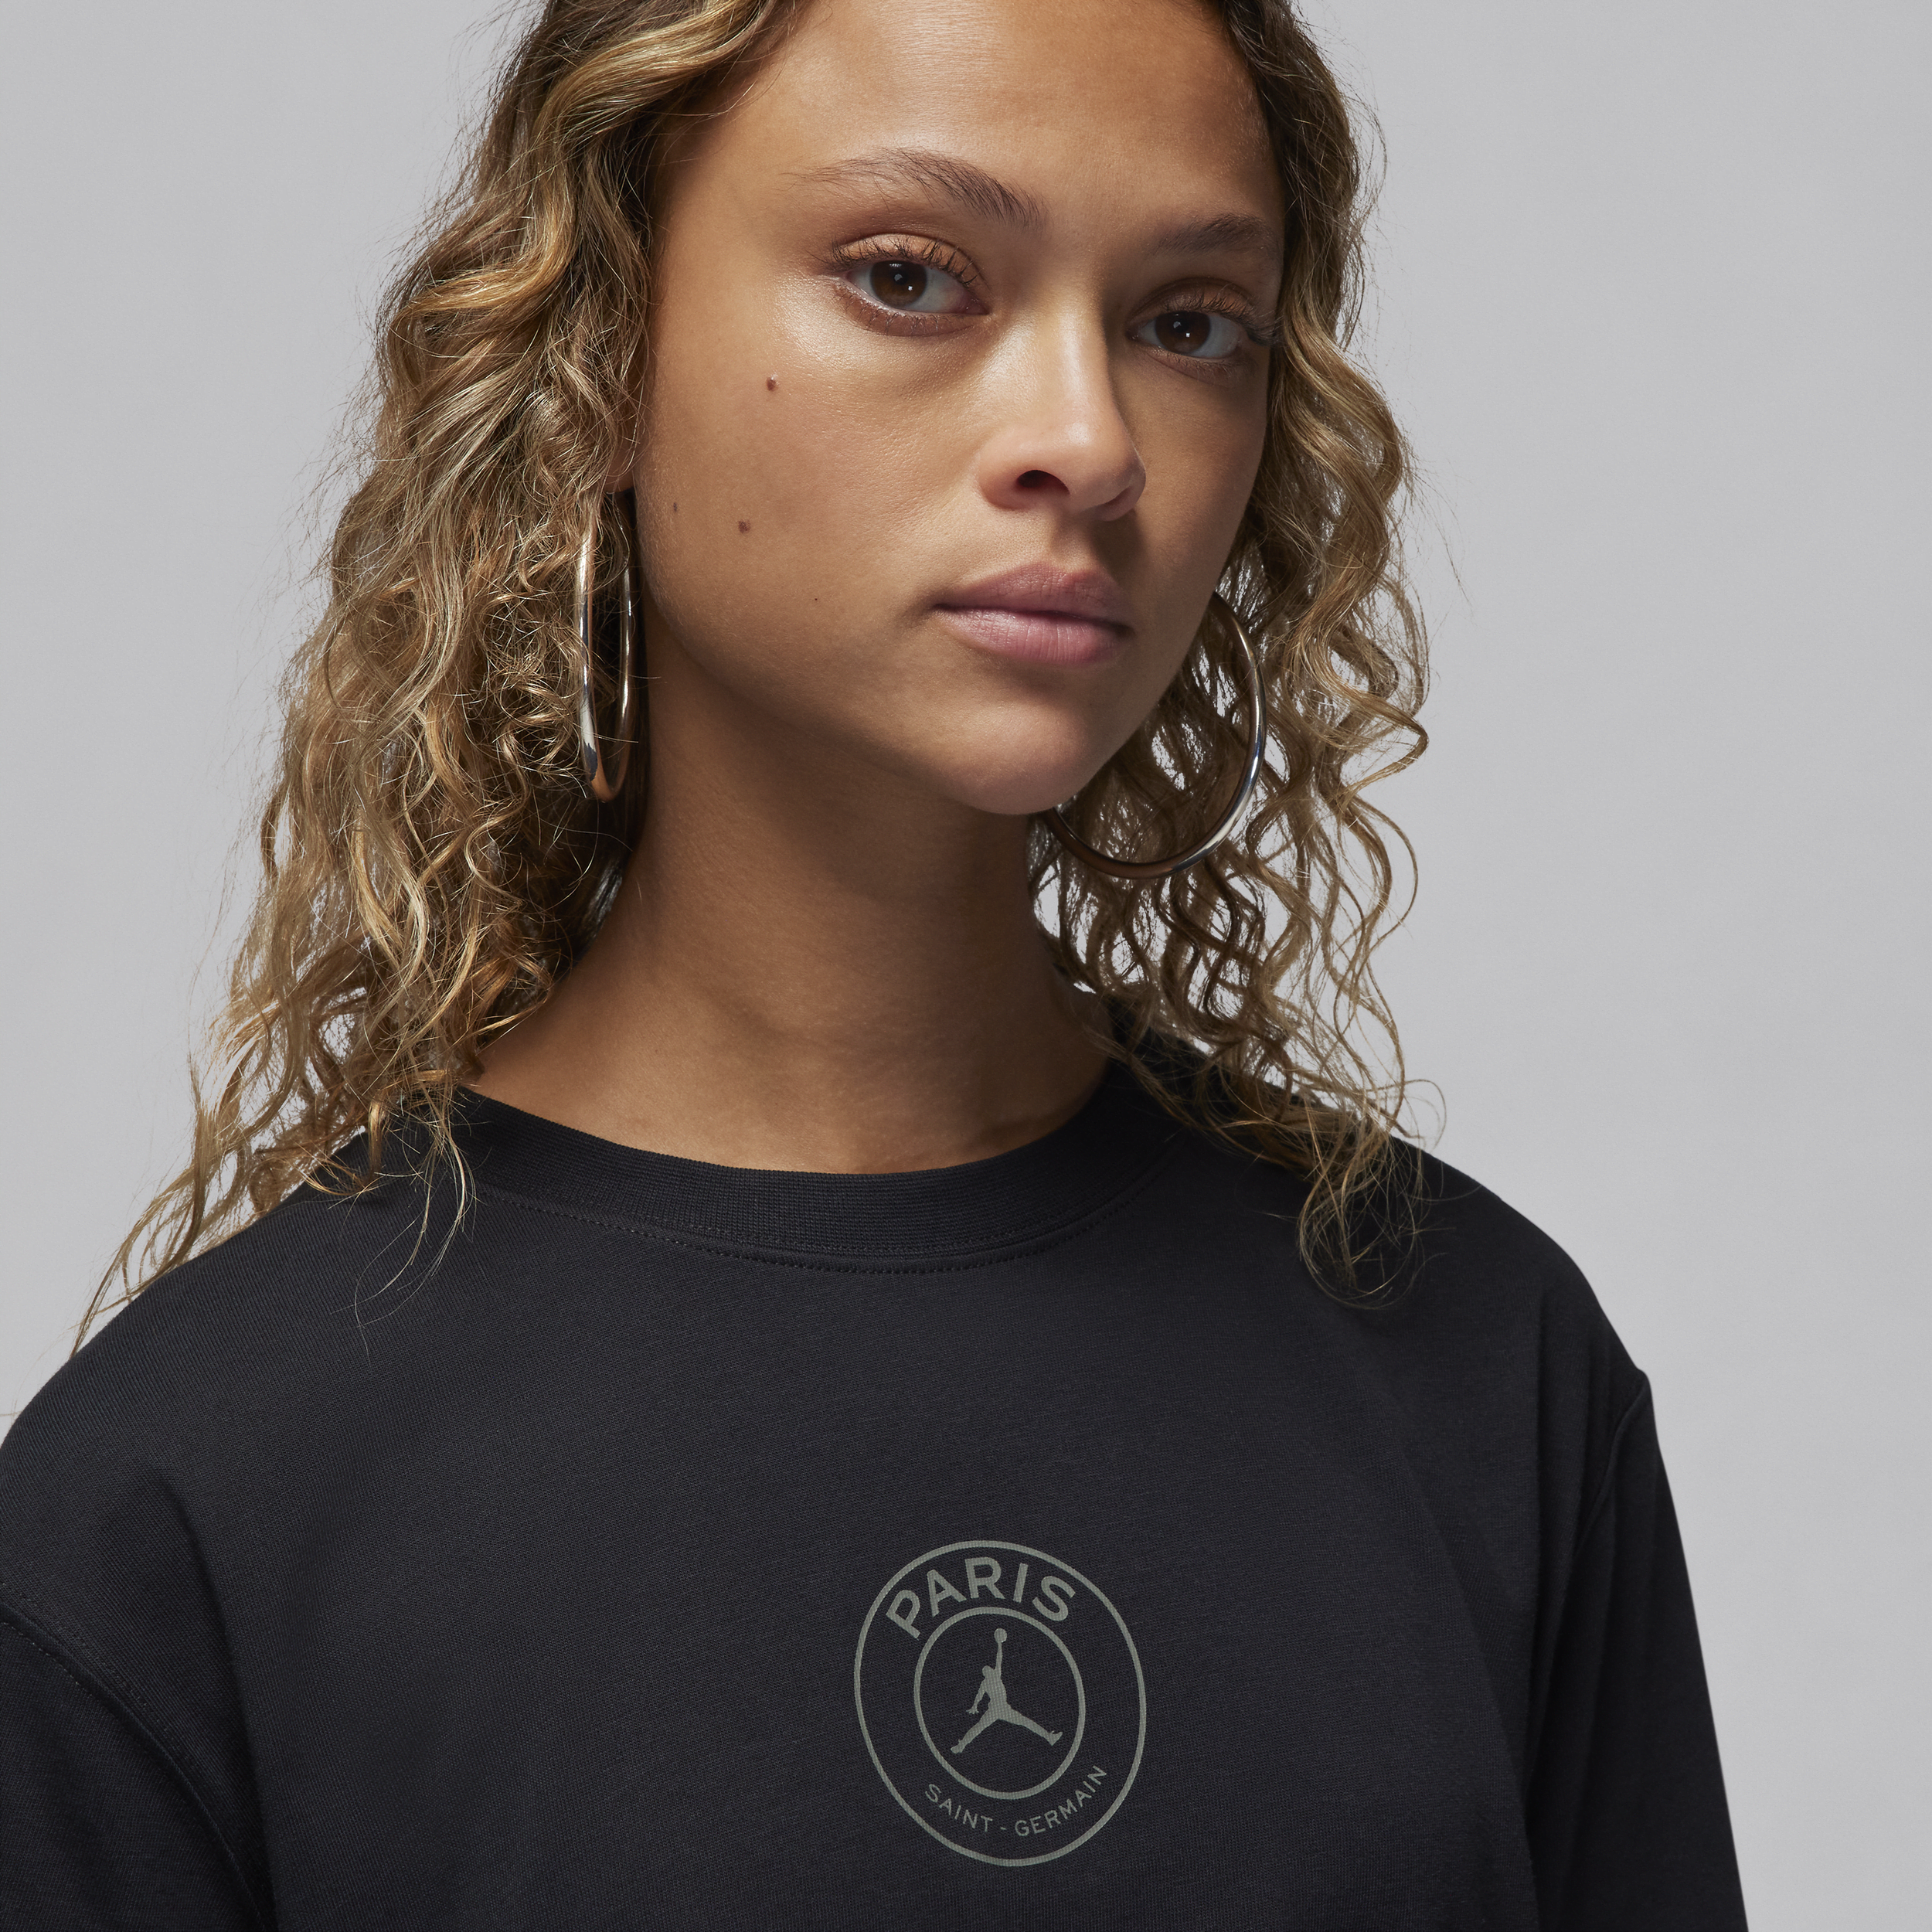 Jordan Paris Saint-Germain voetbalshirt met graphic voor dames Zwart